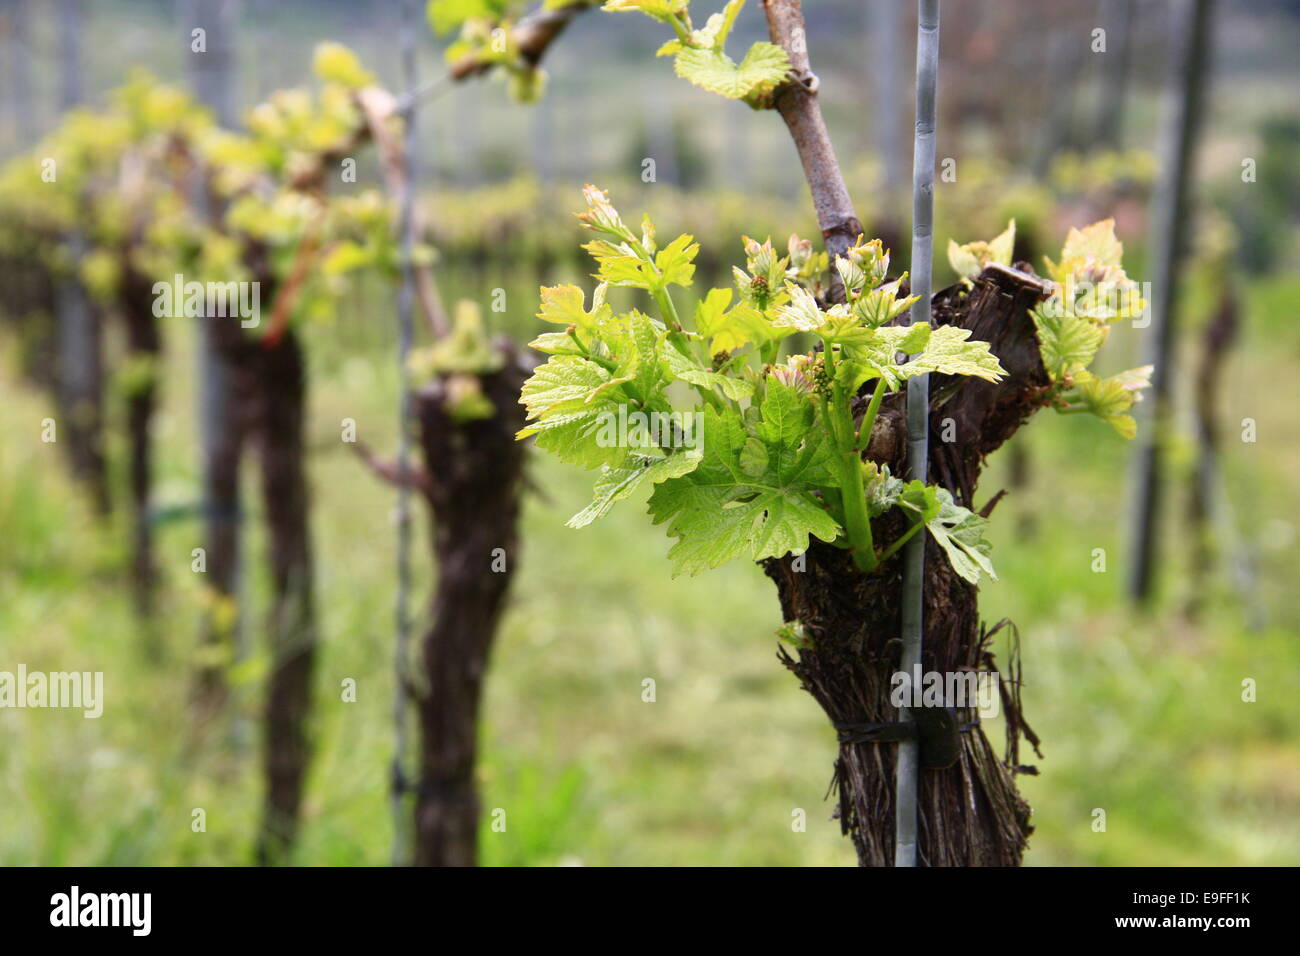 Shoots in grapevine (Vitis vinifera) Stock Photo